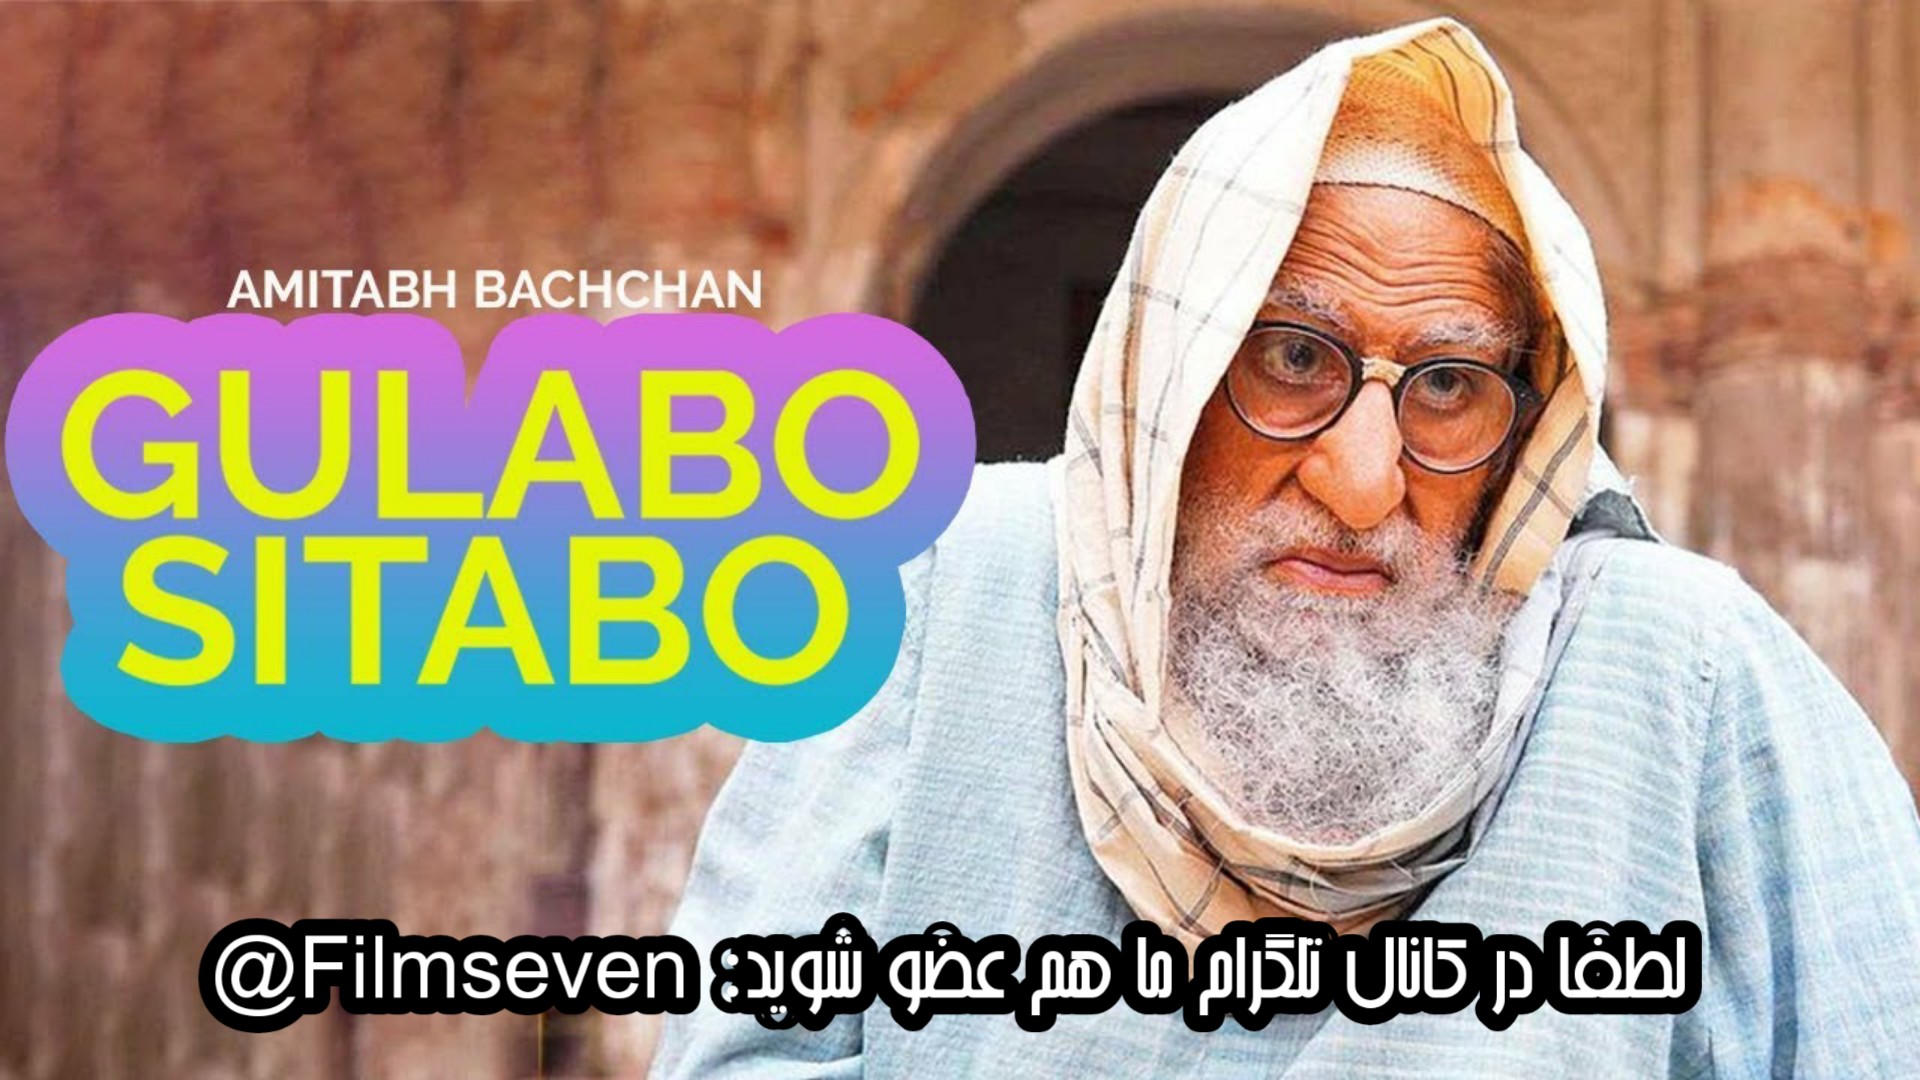 فیلم Gulabo Sitabo 2020 - گلابو سیتابو با زیرنویس فارسی چسبیده